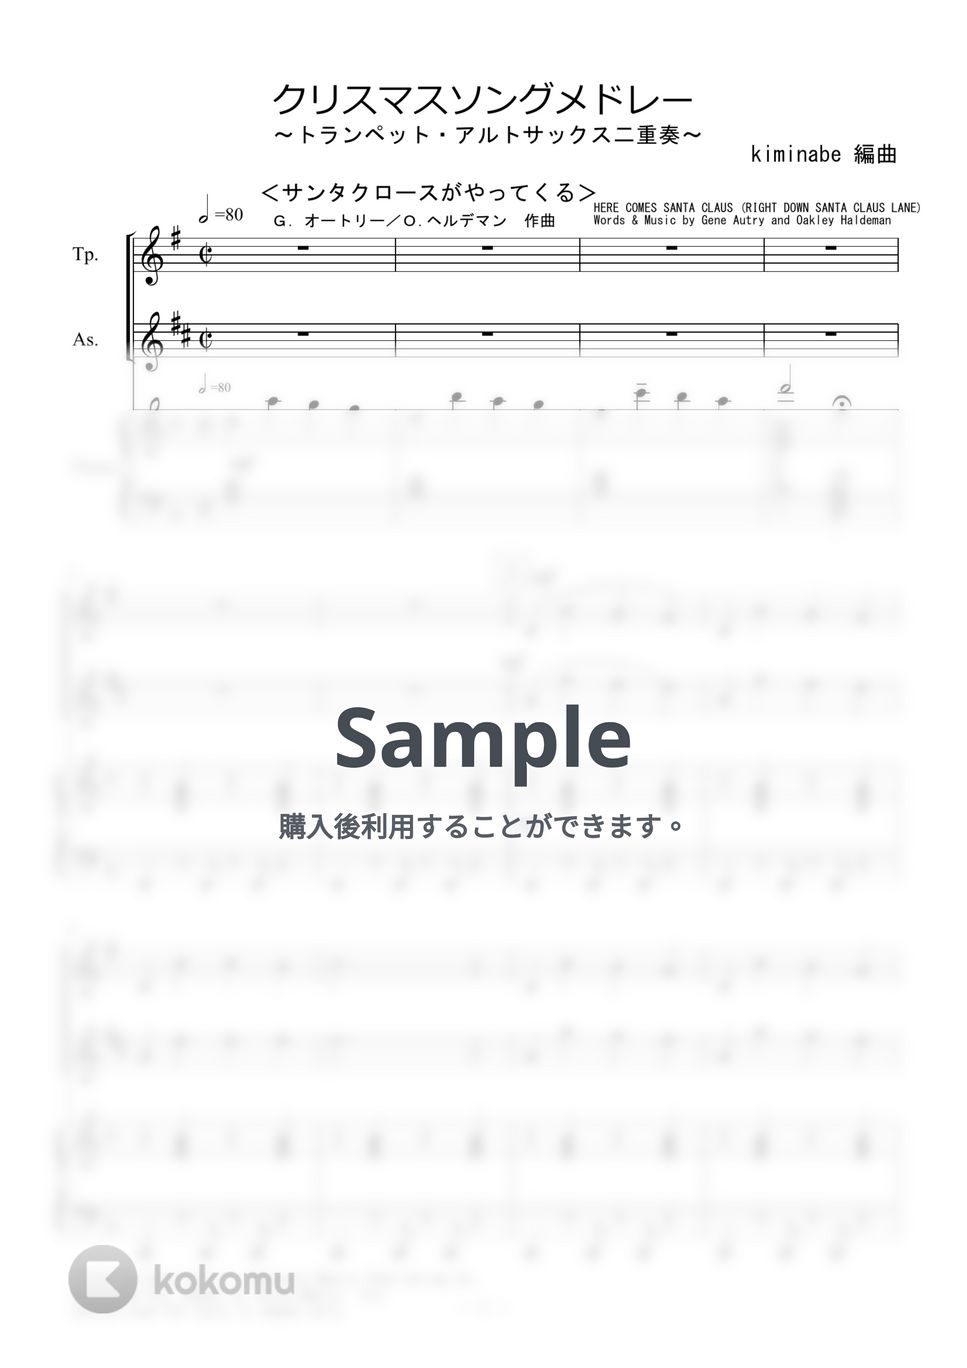 クリスマスソングメドレー (トランペット・アルトサックス二重奏) by kiminabe